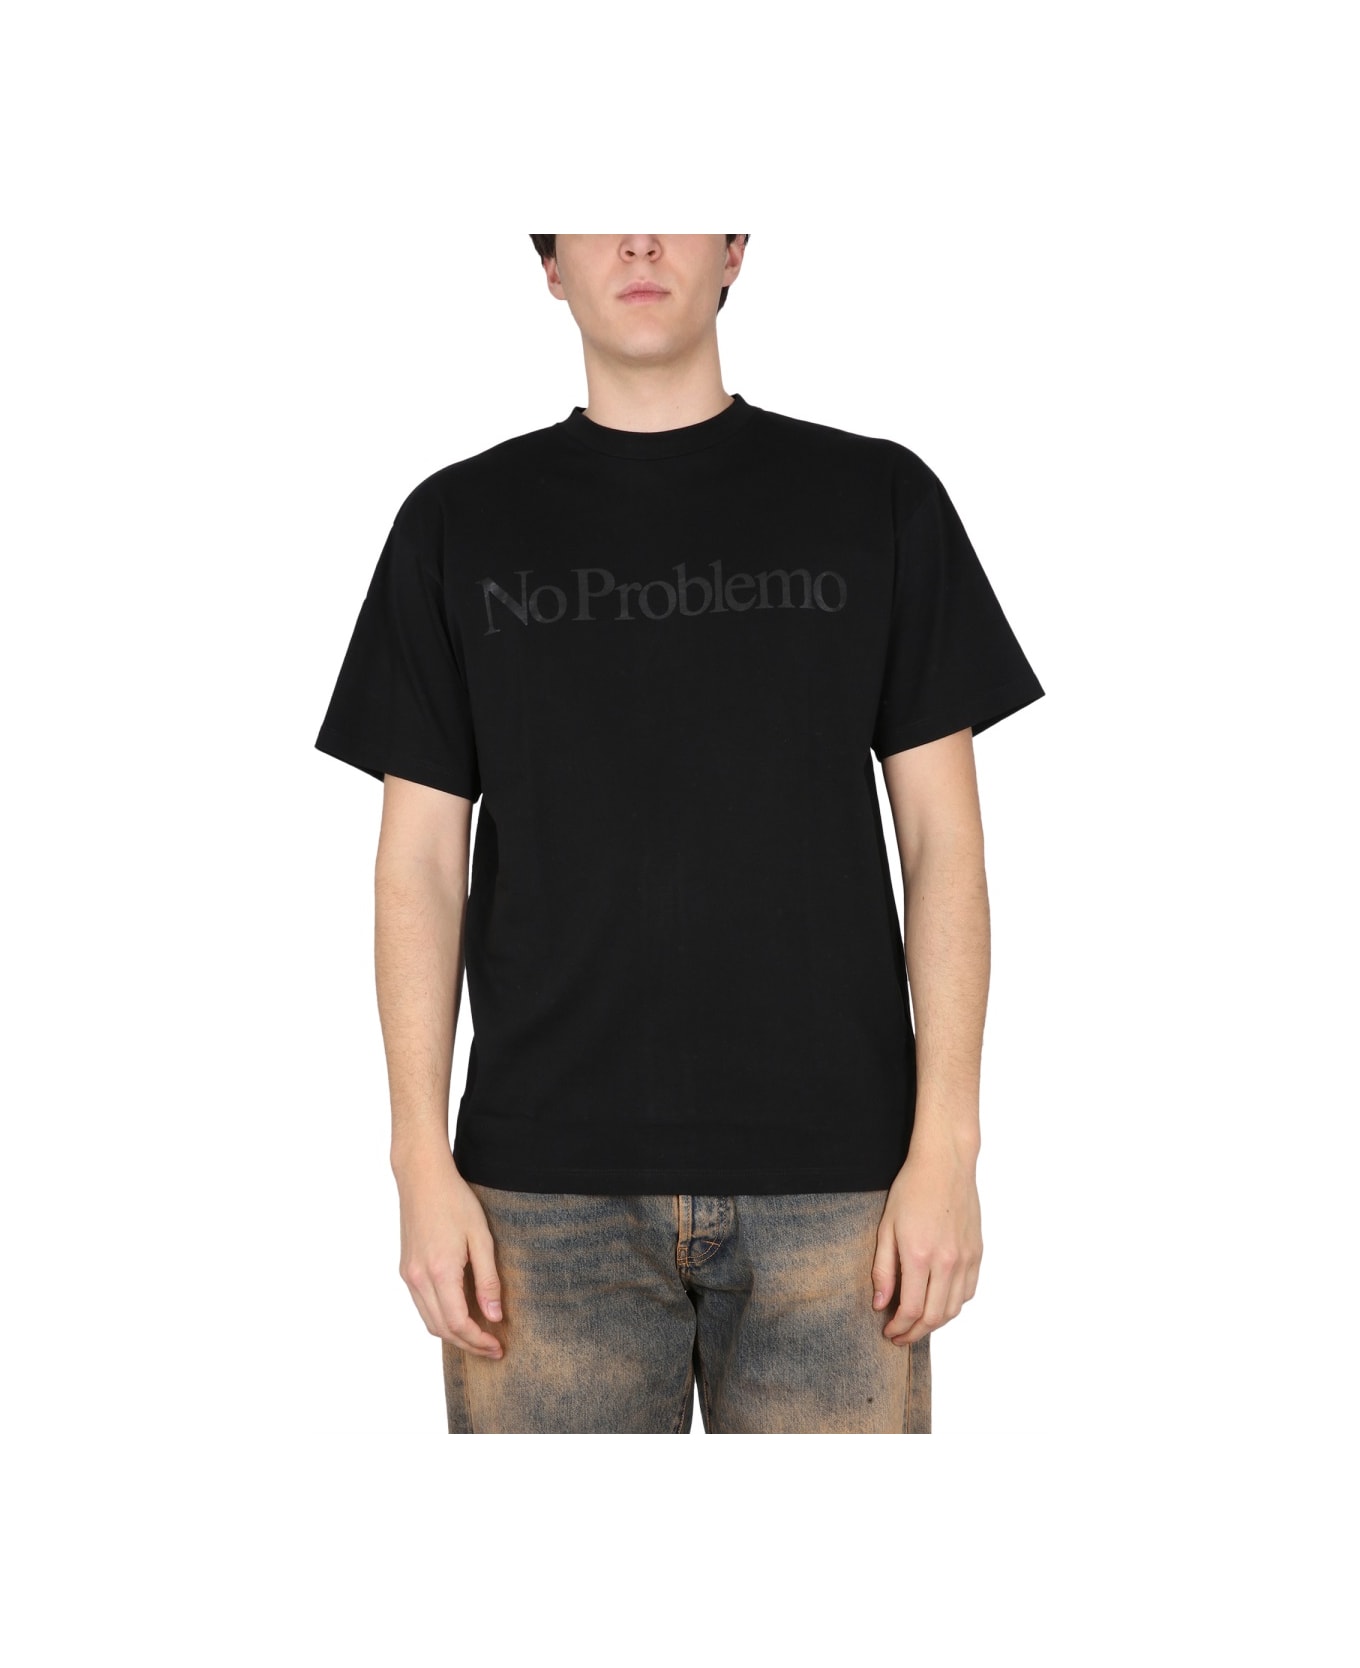 Aries T-shirt No Problemo - BLACK シャツ